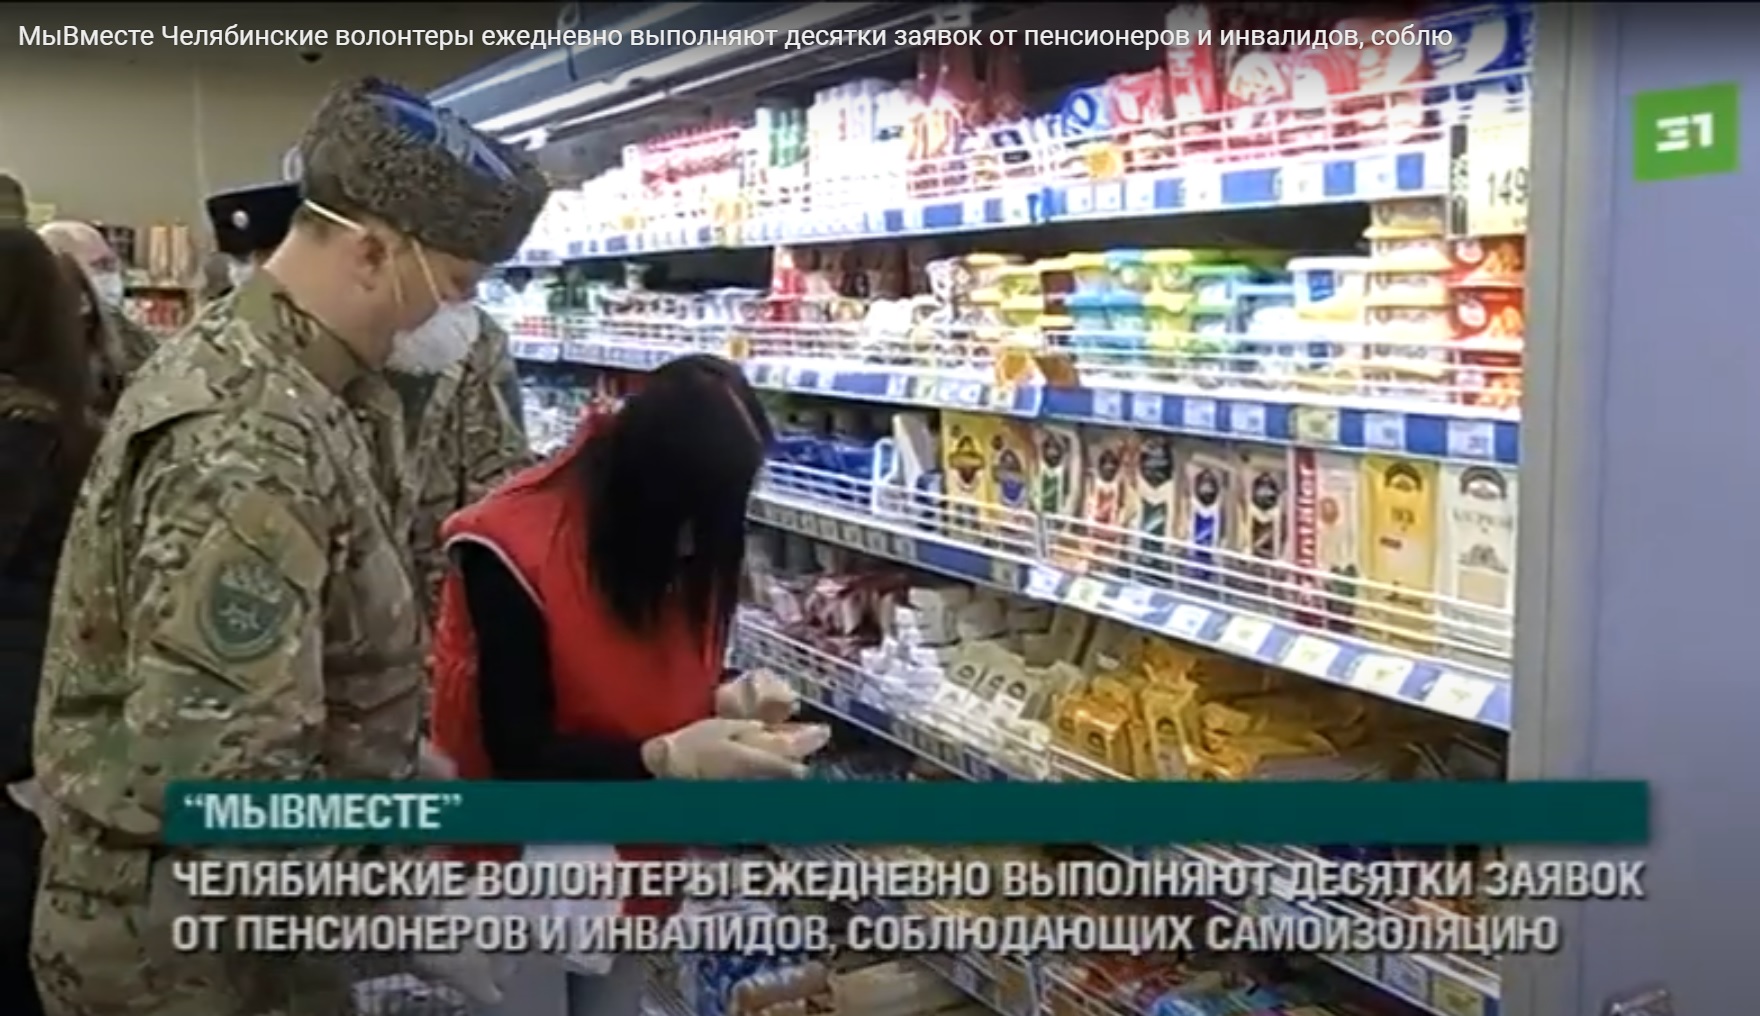 Сюжет 31 канала о добровольческой деятельности челябинских казаков 